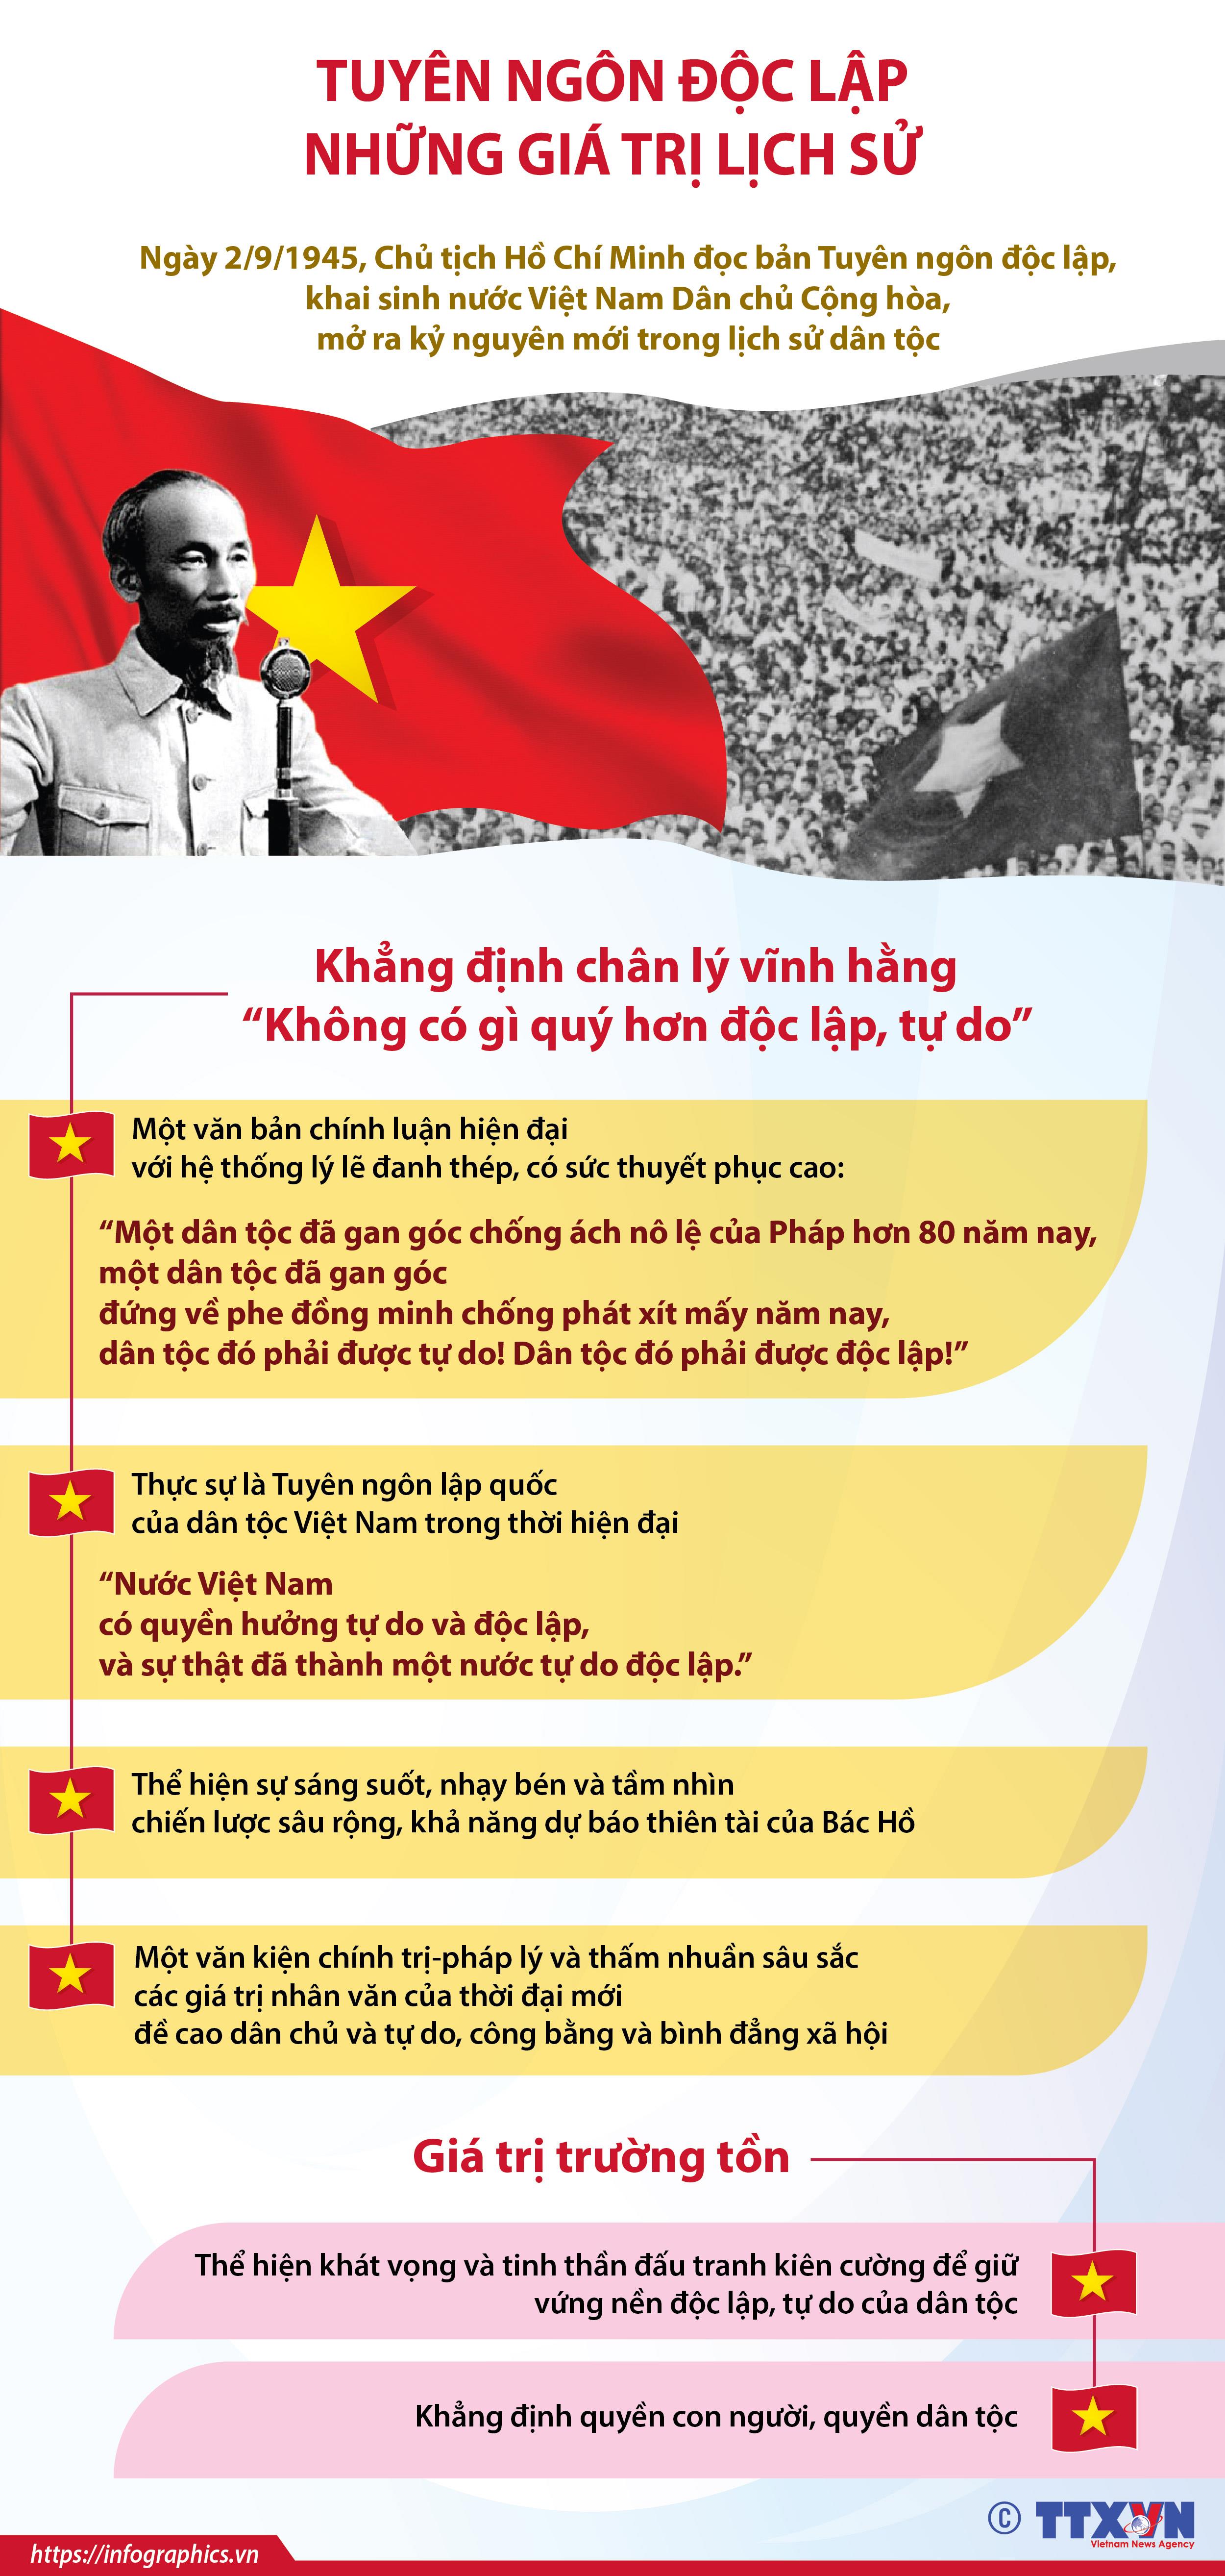 Tuyên ngôn độc lập, được tuyên bố vào năm 1945, là bước ngoặt lịch sử quan trọng cho sự tự chủ và độc lập của Việt Nam. Năm 2024, kỷ niệm 78 năm Tuyên ngôn độc lập tại Hà Nội, những người dân và du khách sẽ được tận mắt thấy bản chính tuyên bố này, cùng cảm nhận tình yêu dân tộc của bậc tiền bối.